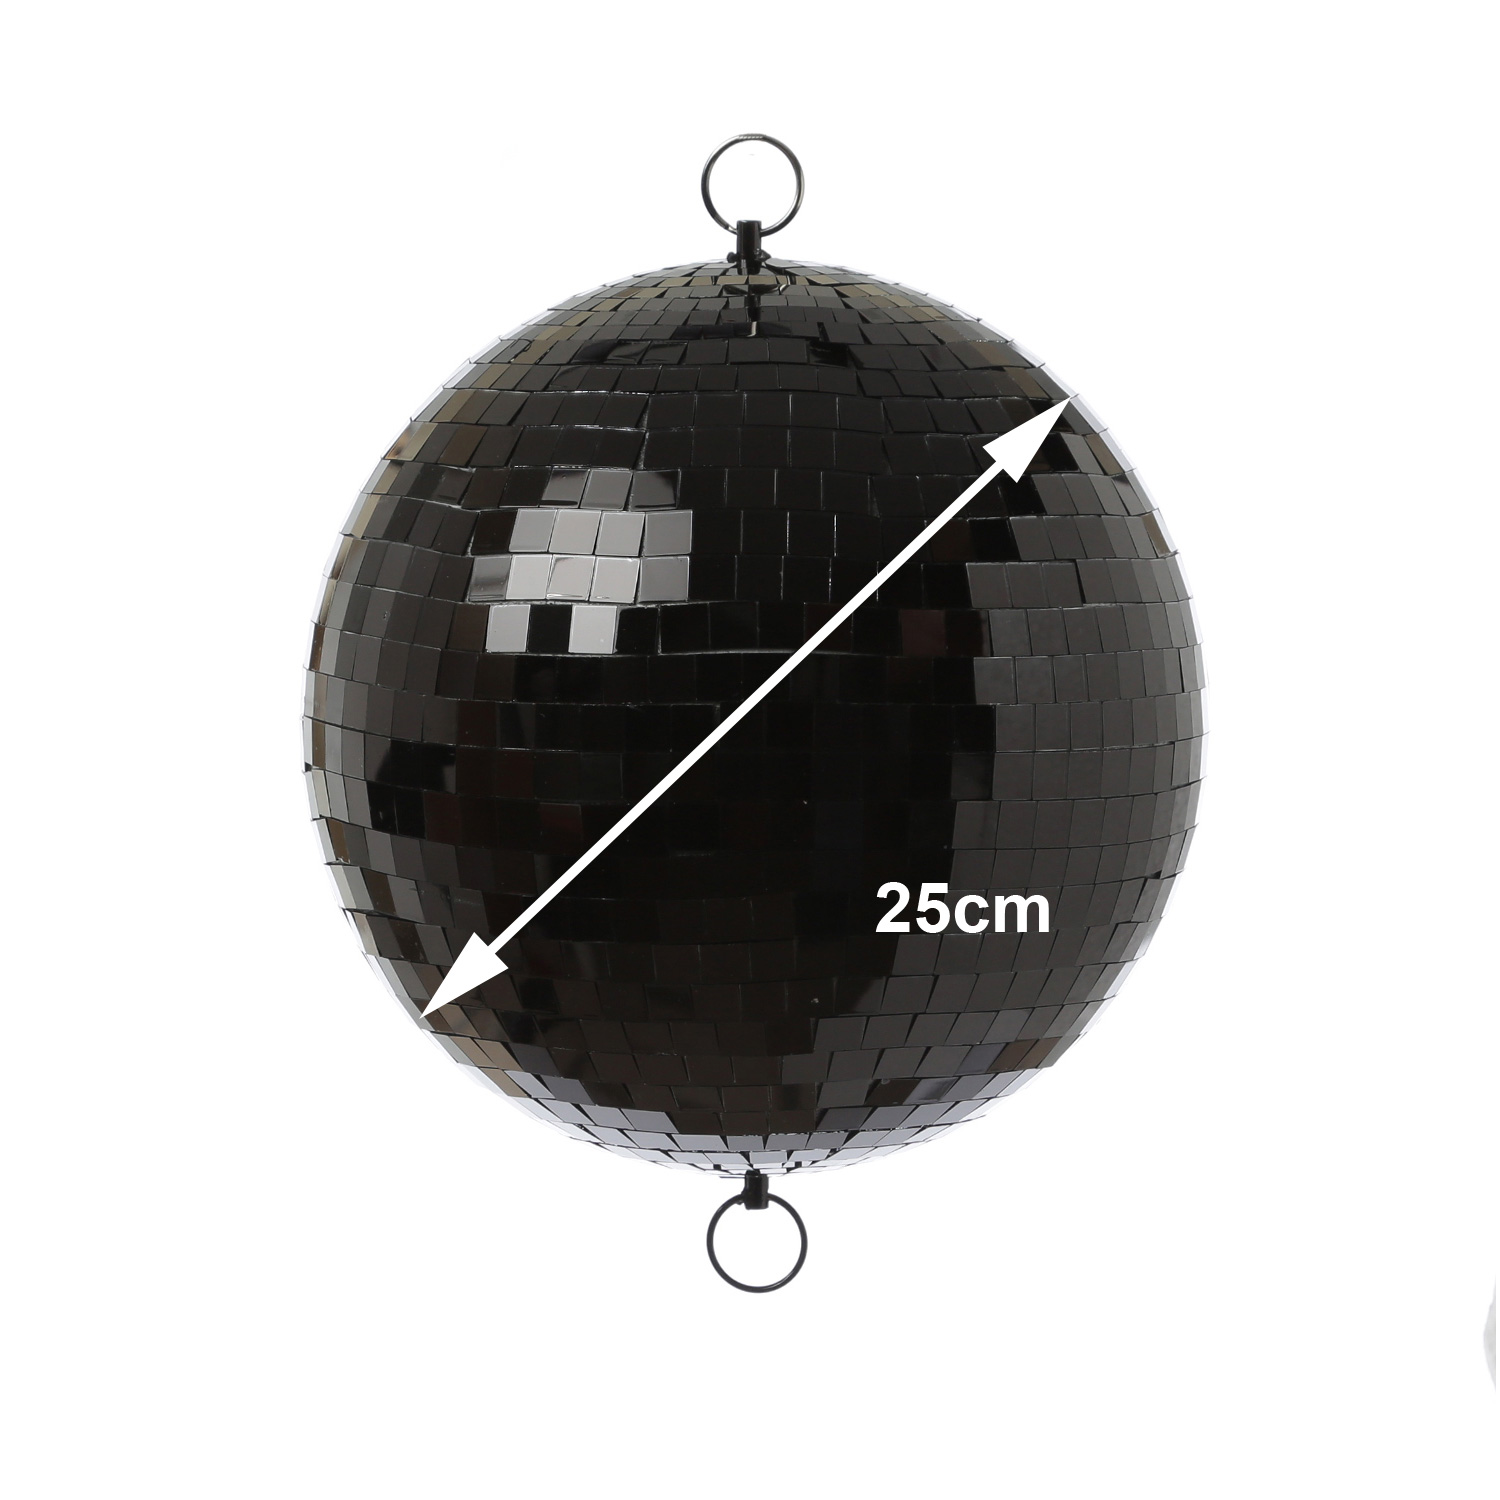 Spiegelkugel 25cm - schwarz - Discokugel Echtglas - 10x10mm Spiegel - PROMO - Metallöse oben + unten